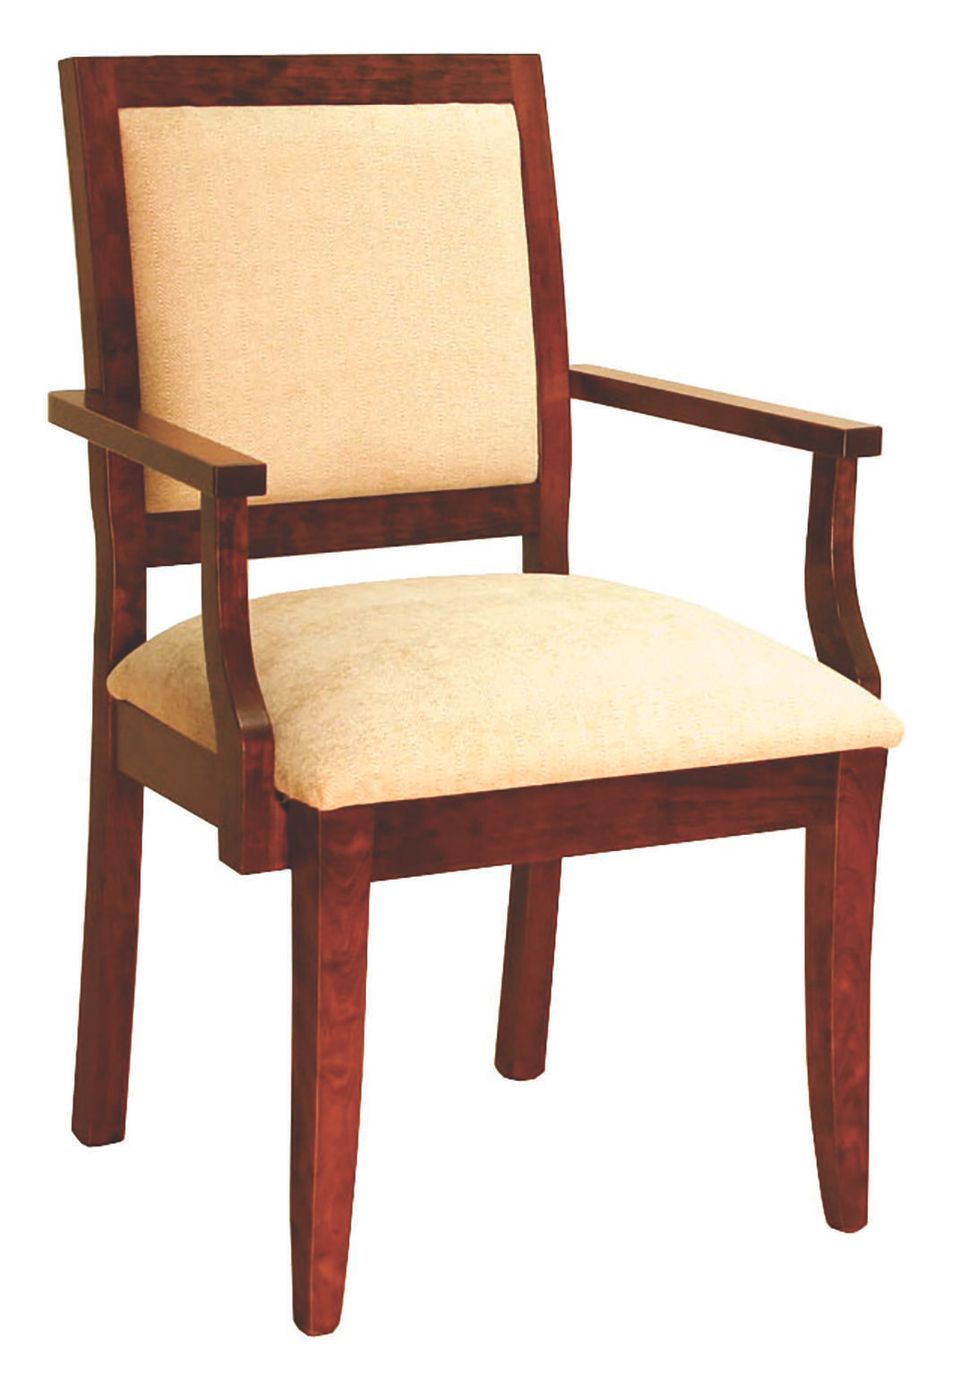 Cd fenton arm chair 13645